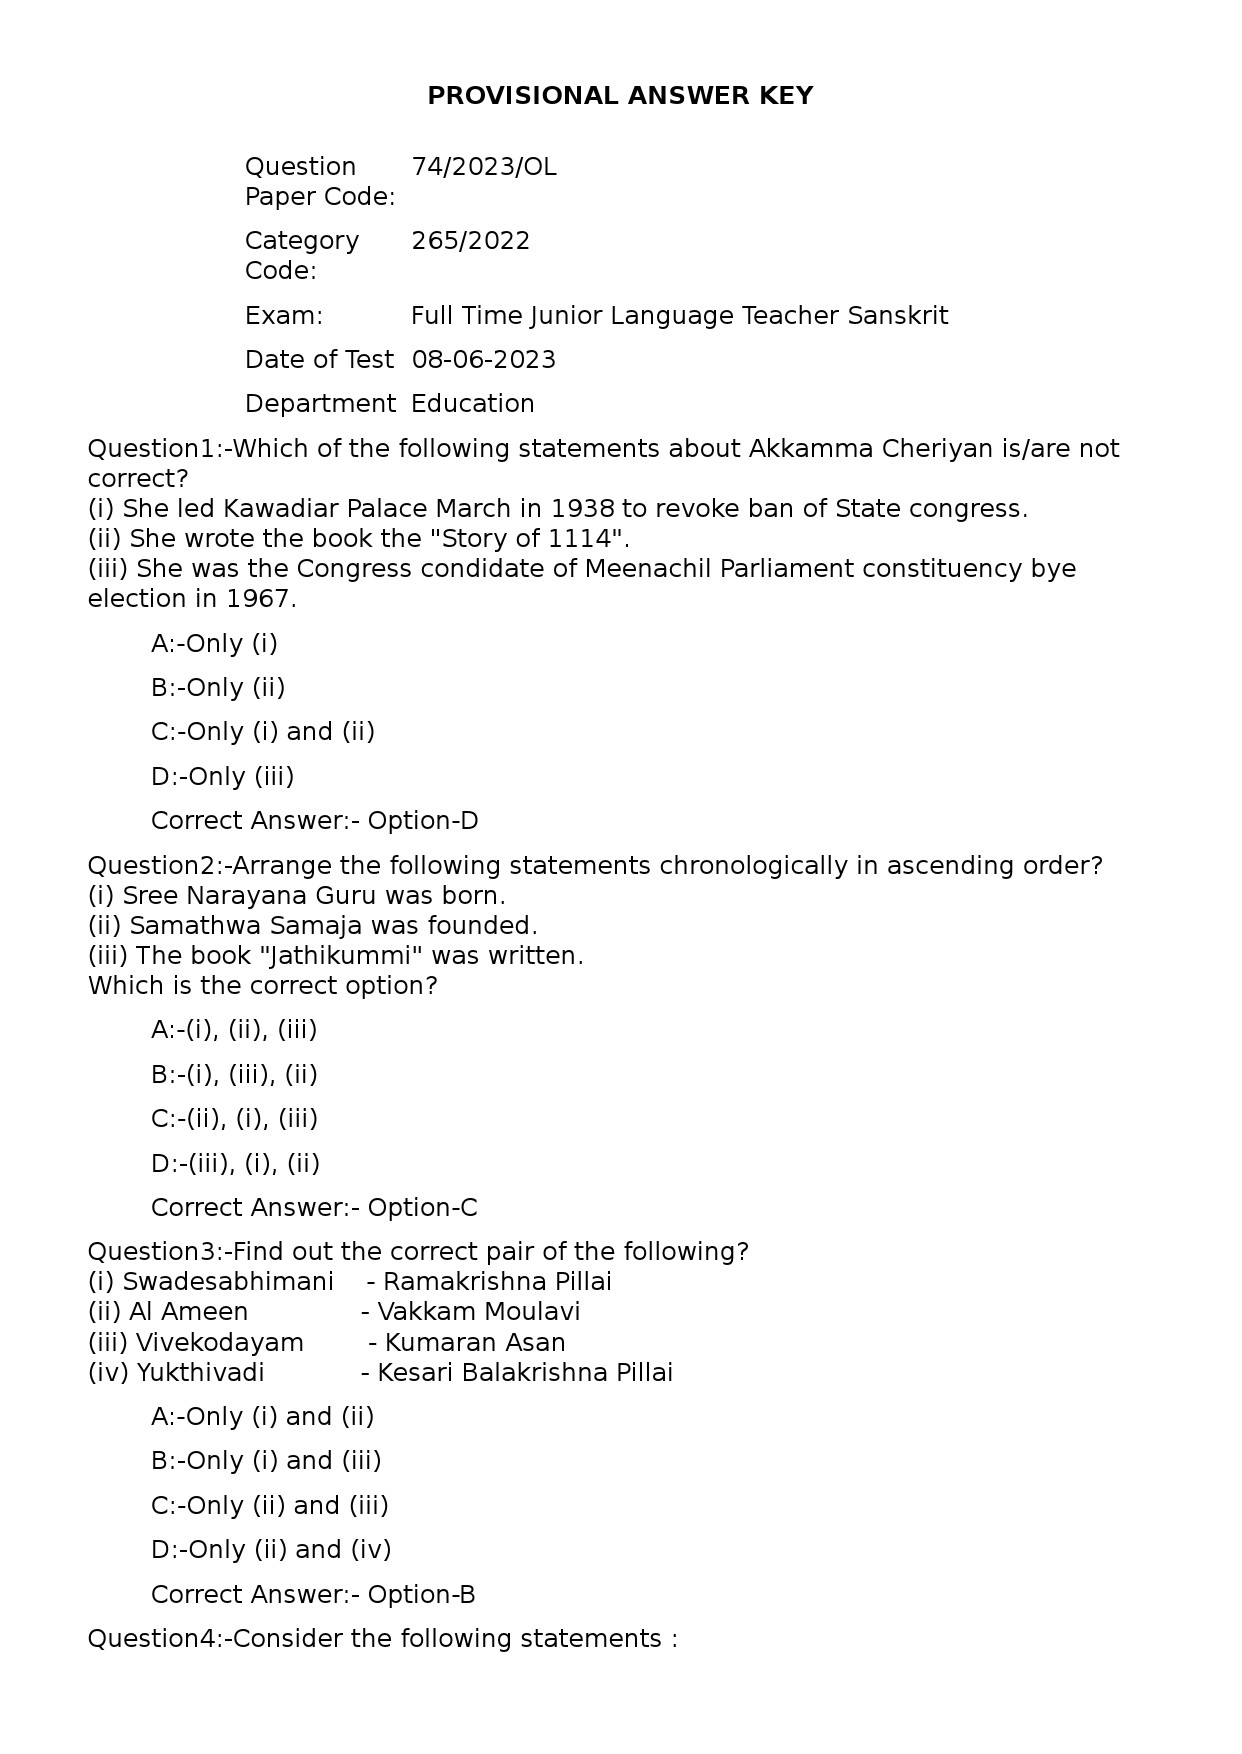 KPSC Full Time Junior Language Teacher Sanskrit Exam 2023 Code 742023OL 1